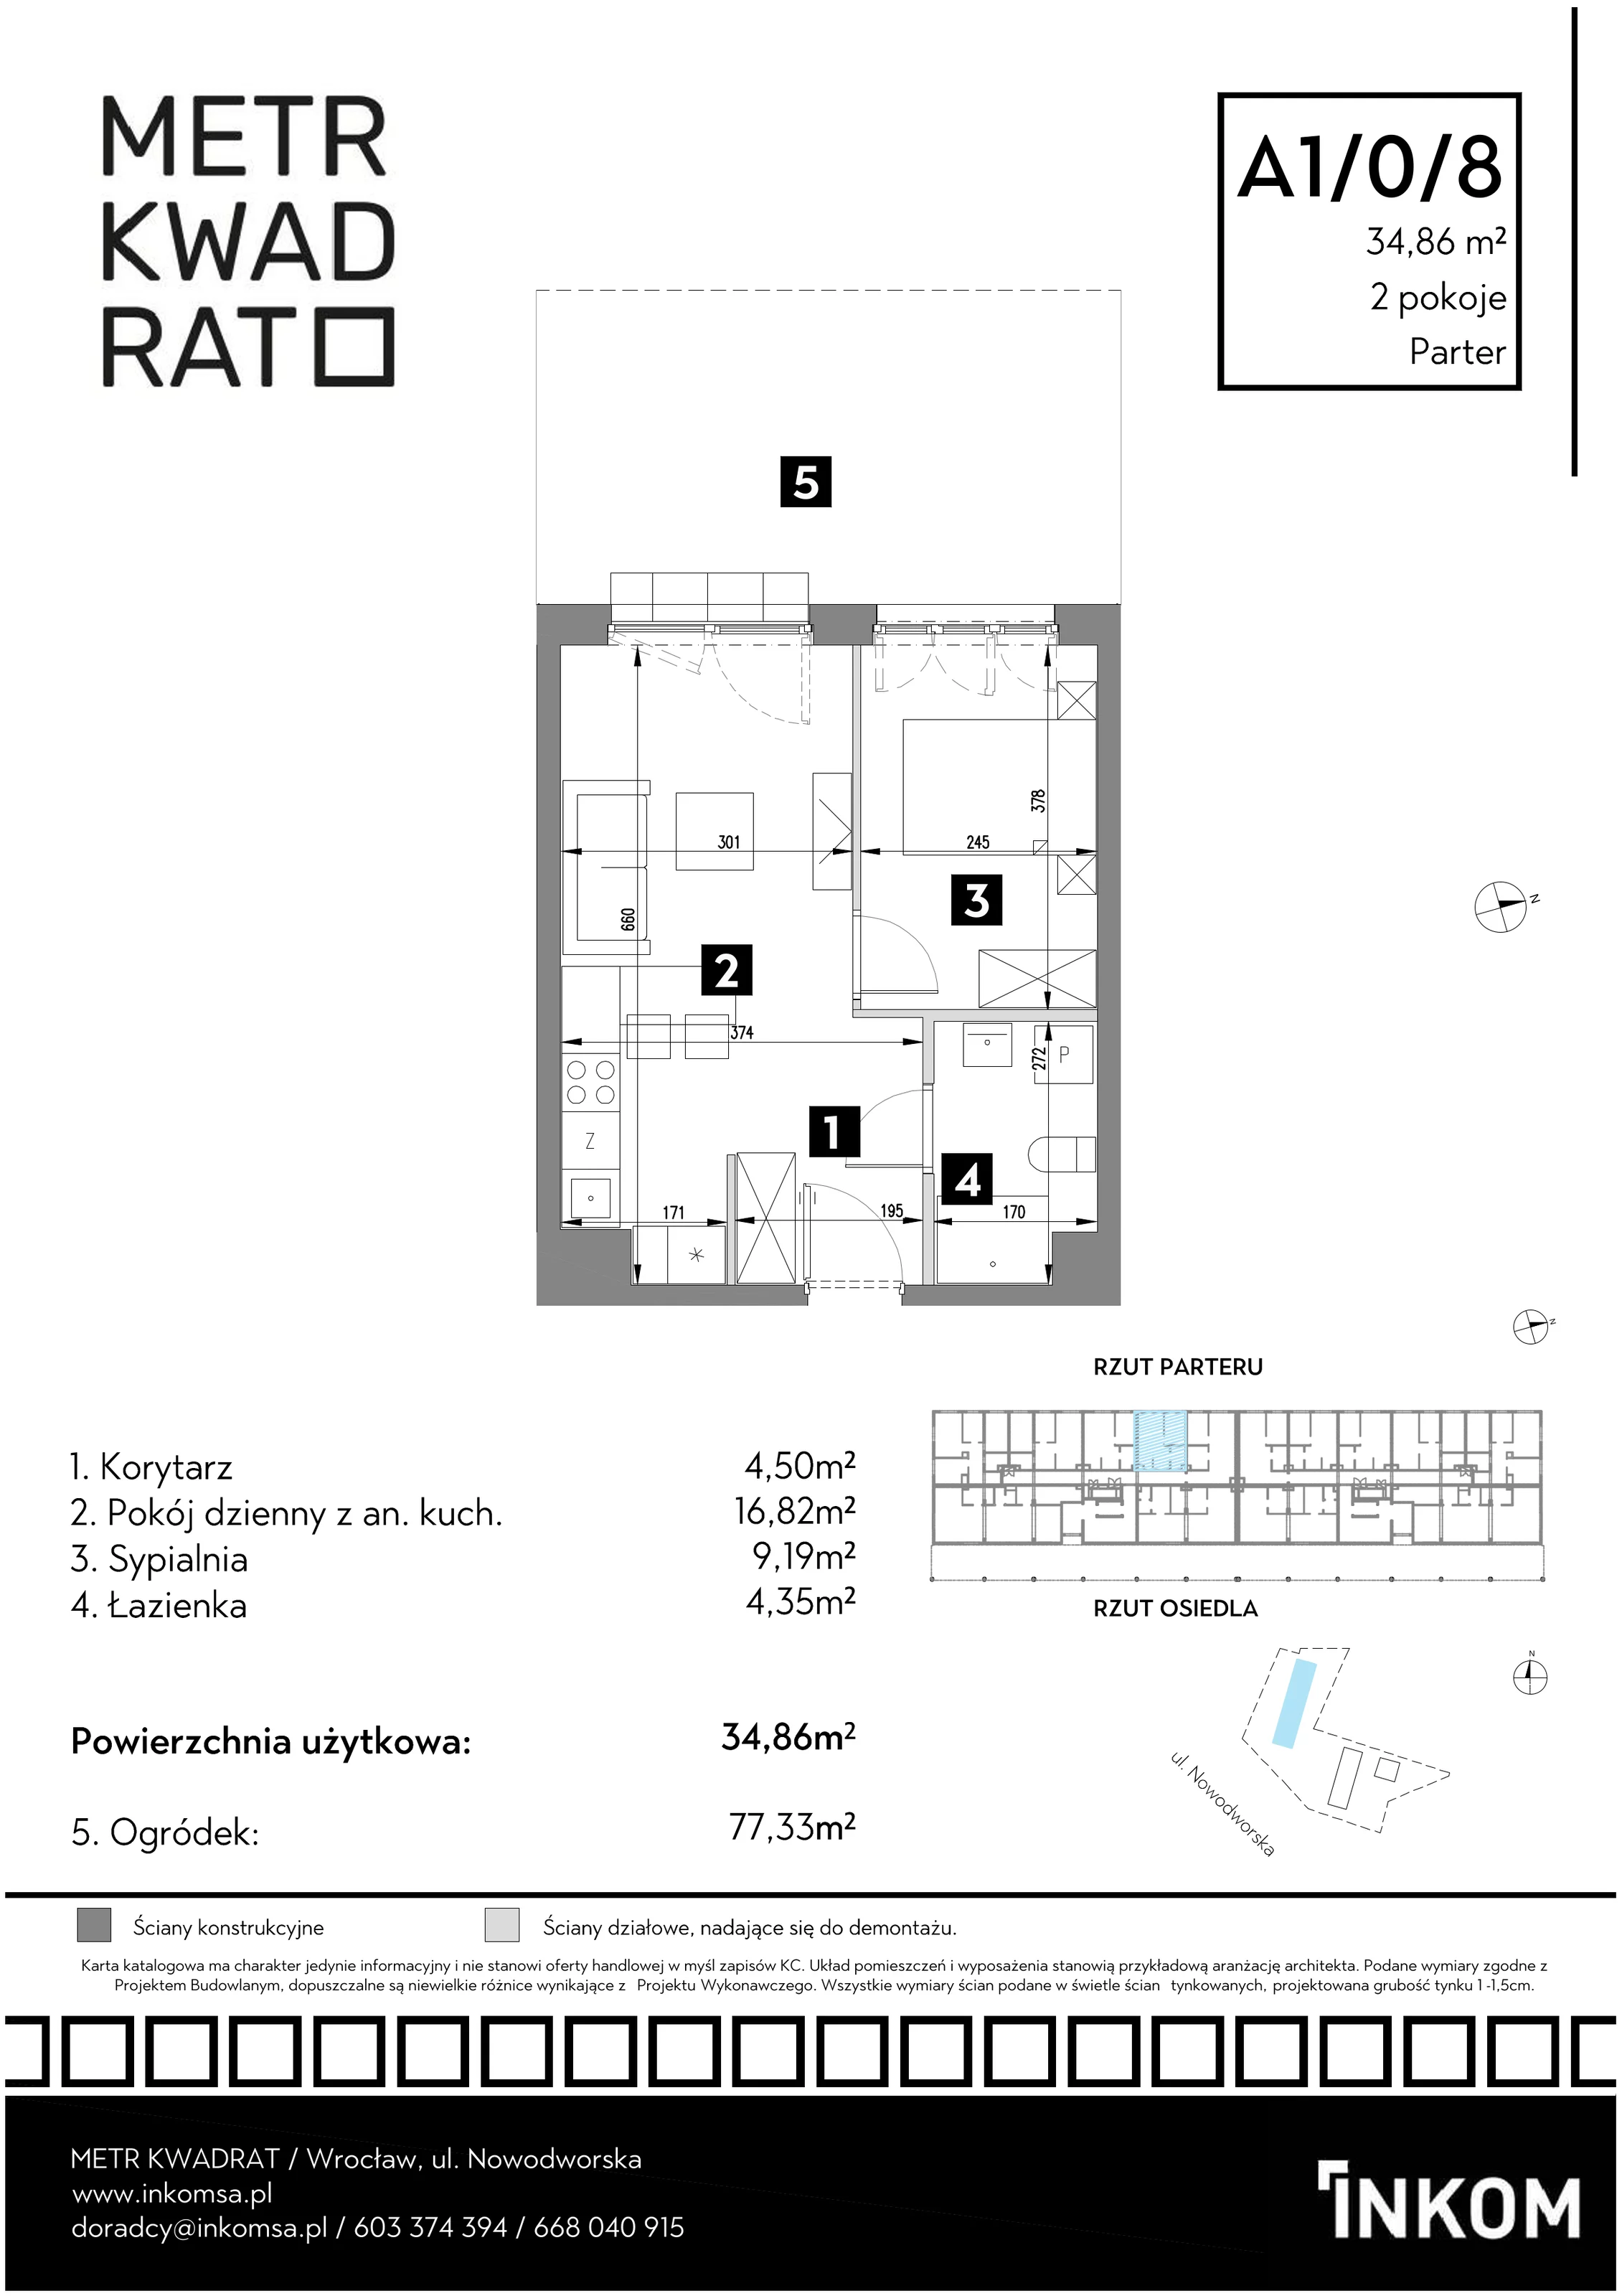 Mieszkanie 34,86 m², parter, oferta nr A1/0/8, Metr Kwadrat, Wrocław, Nowy Dwór, ul. Nowodworska 17B